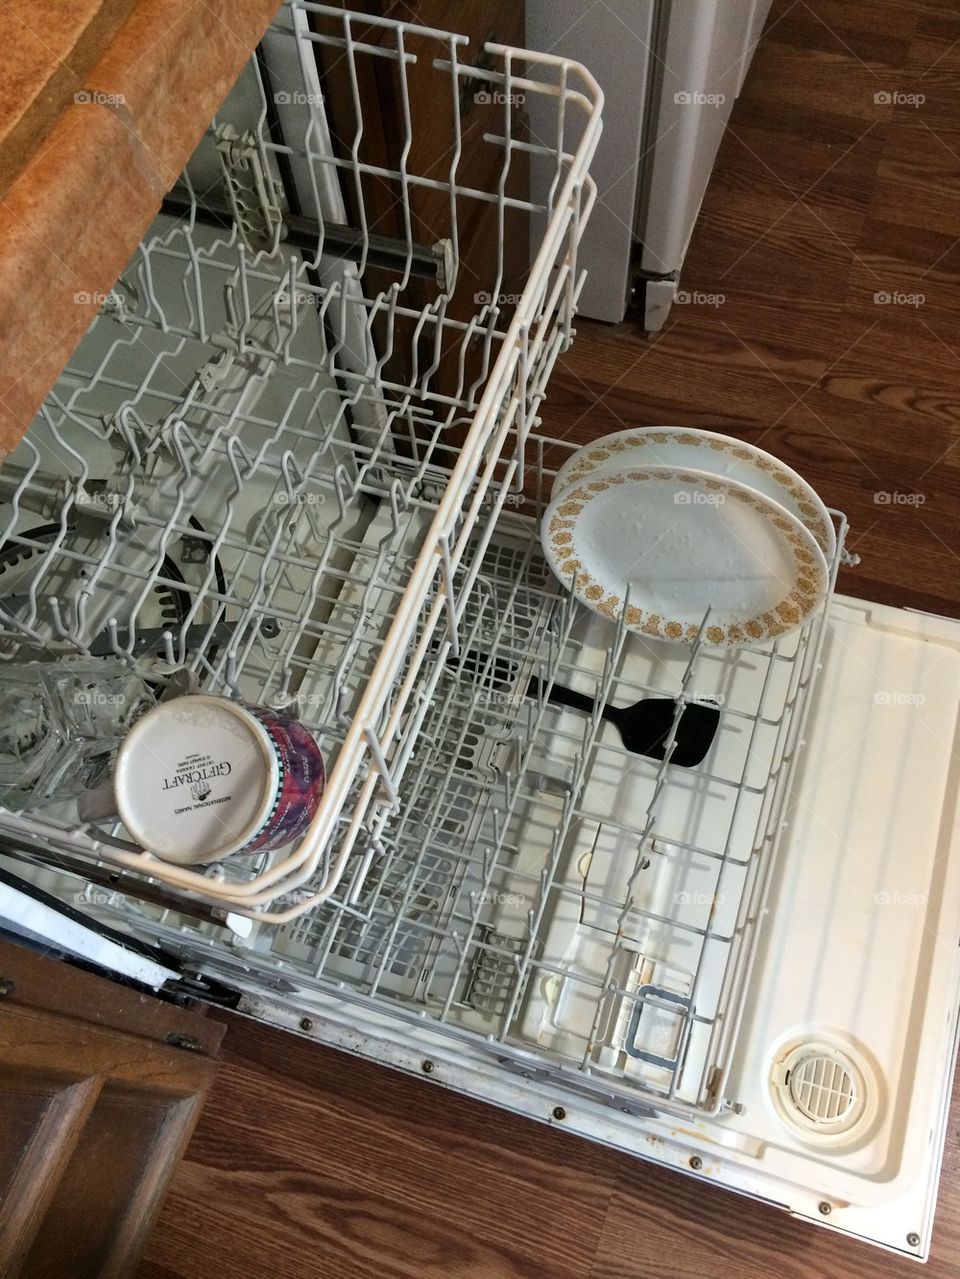 Loading Dishwasher